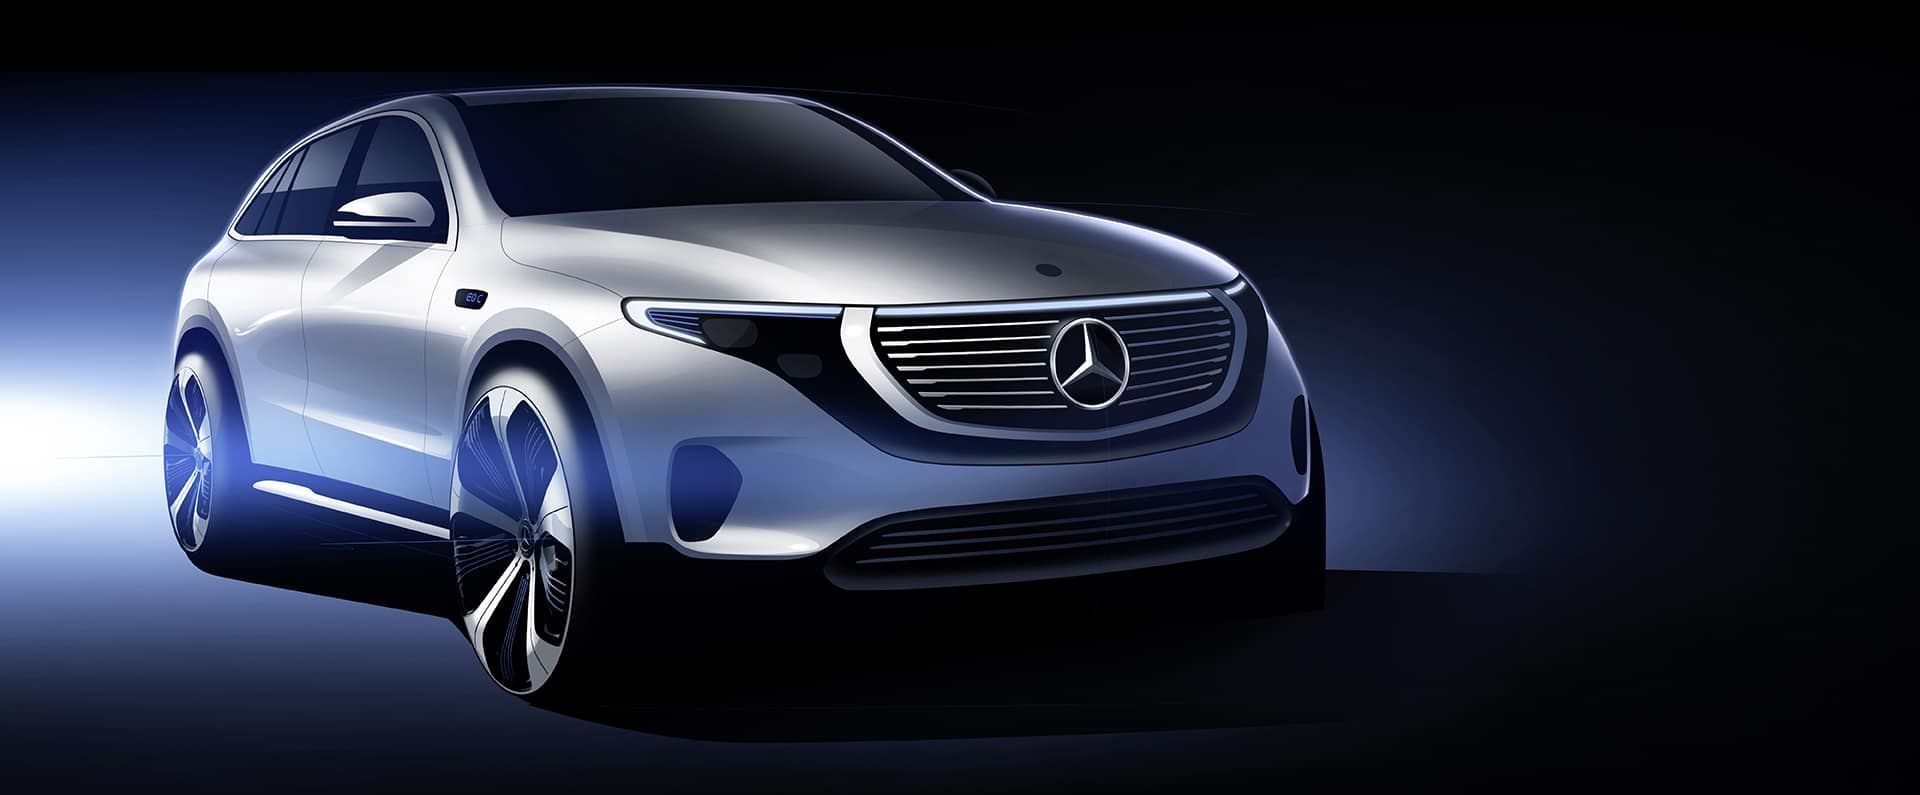 The New Mercedes-Benz EQC